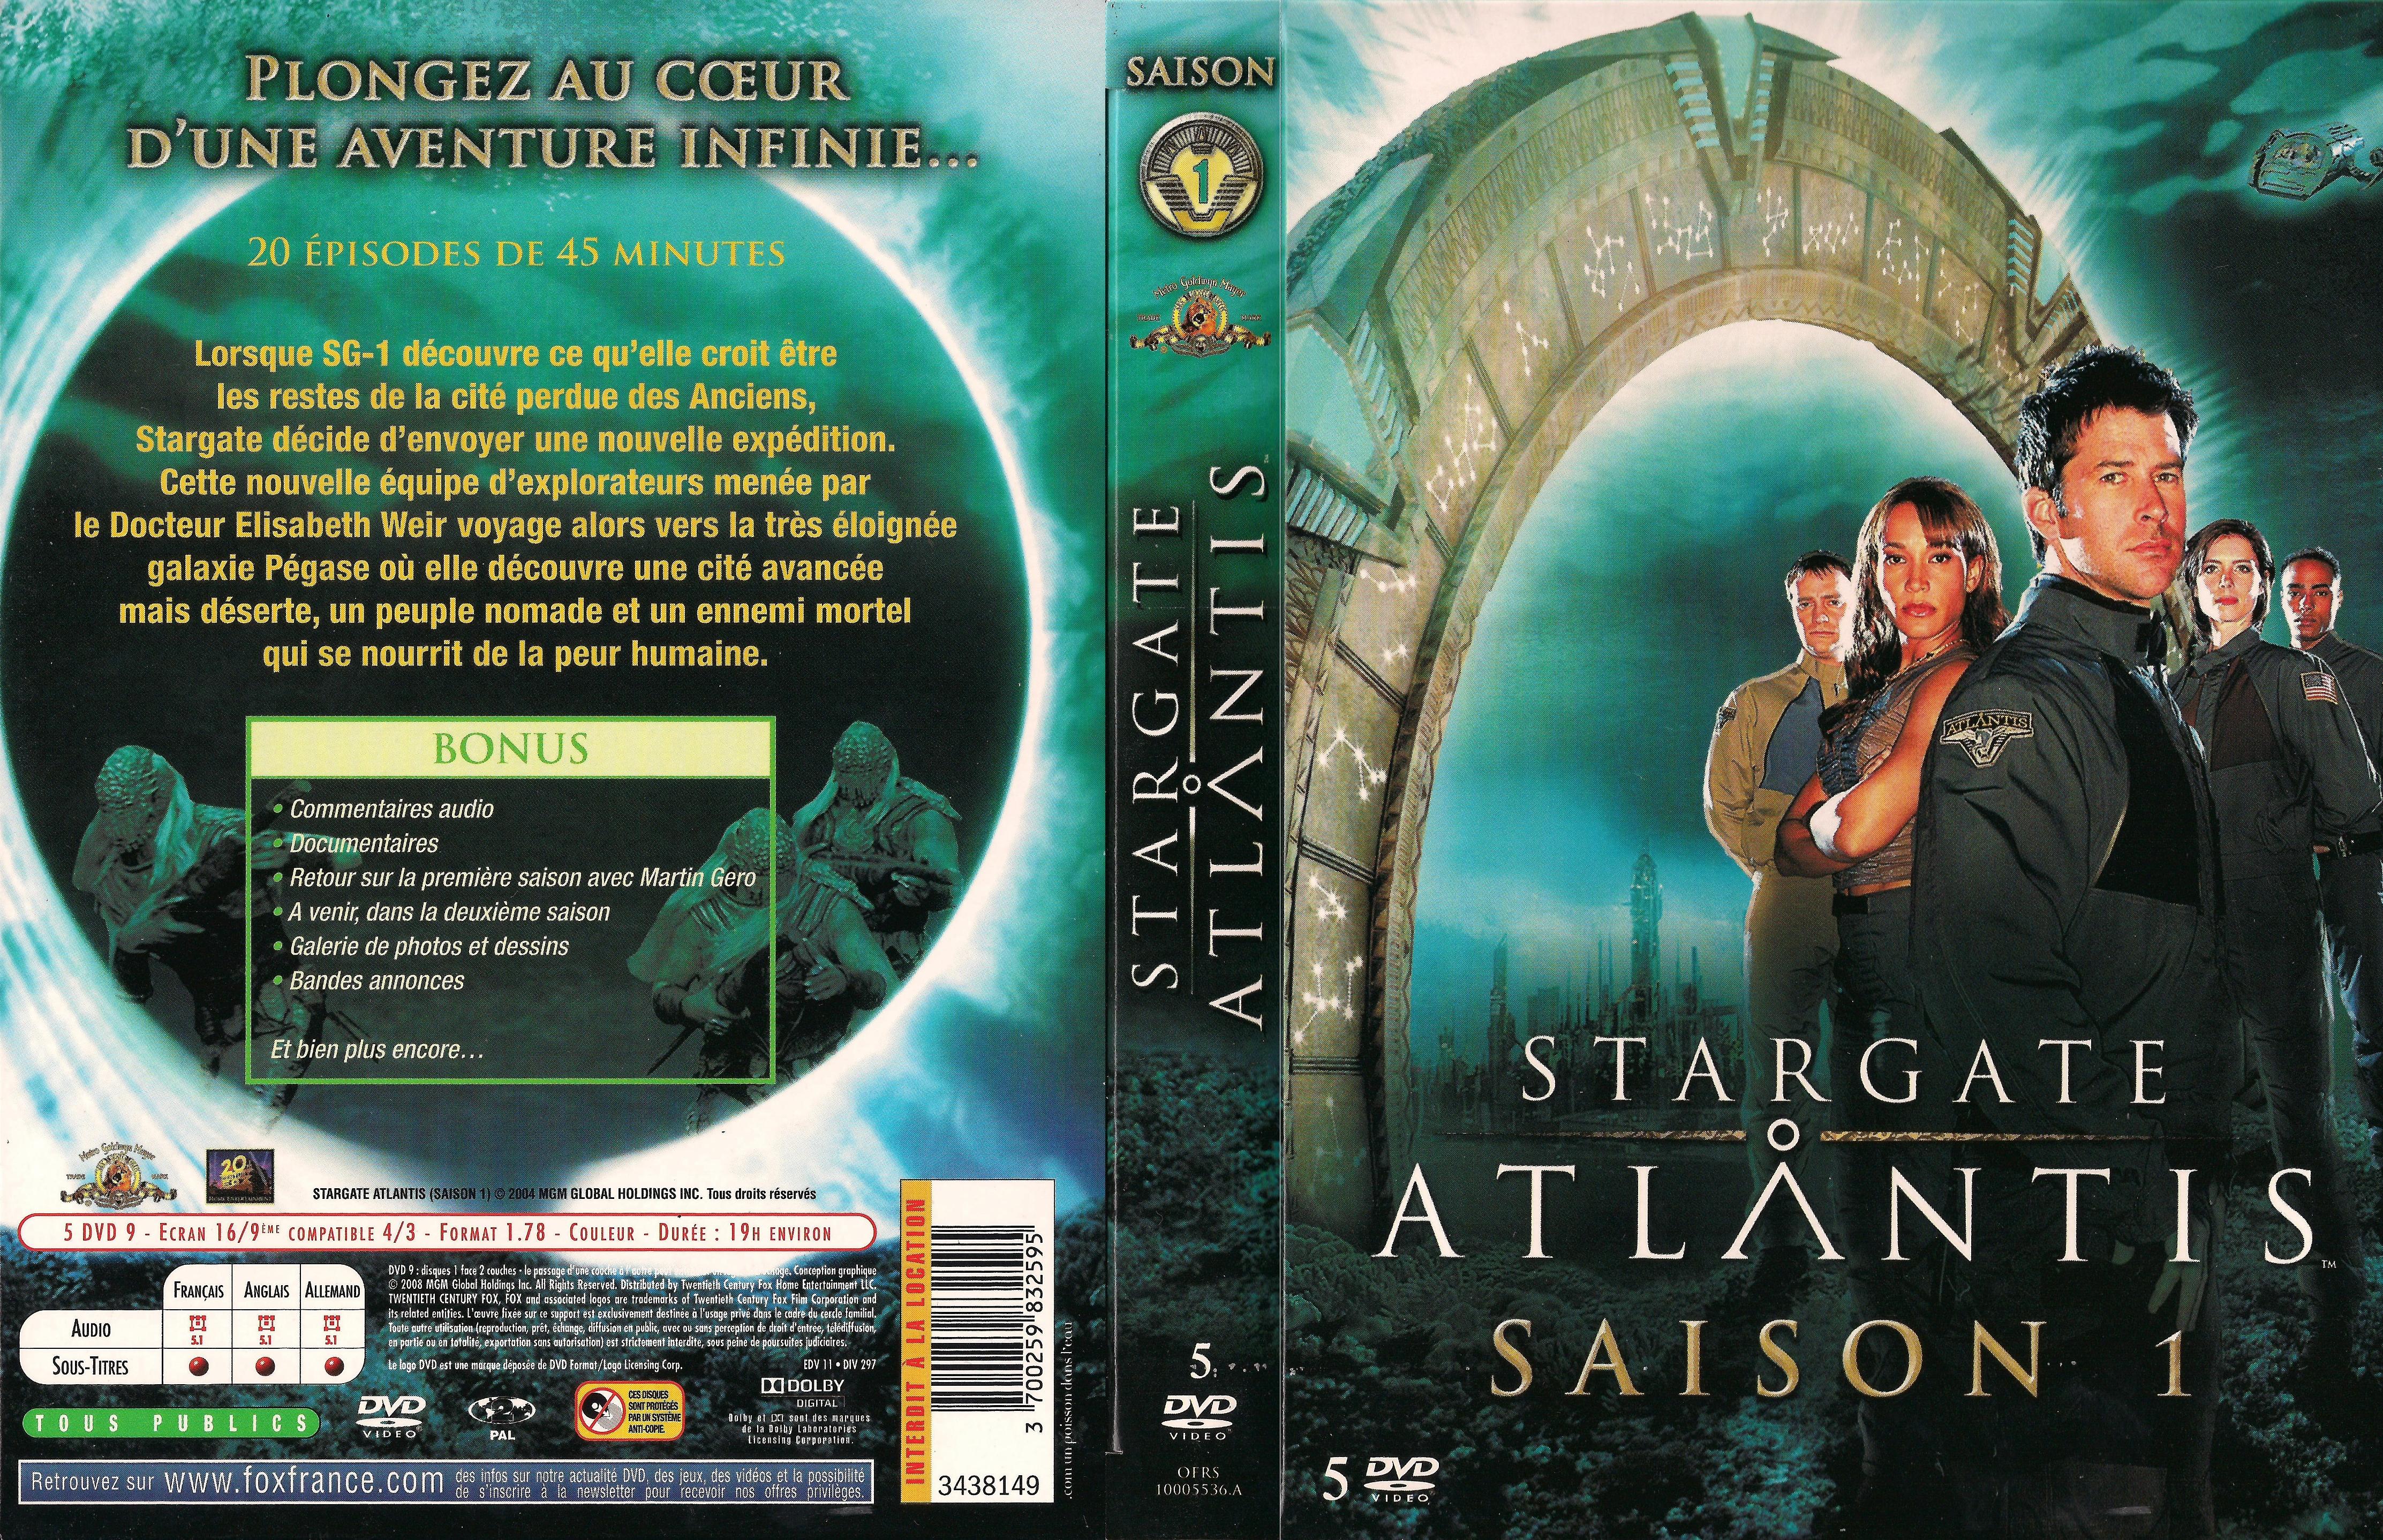 Jaquette DVD Stargate atlantis saison 1 COFFRET